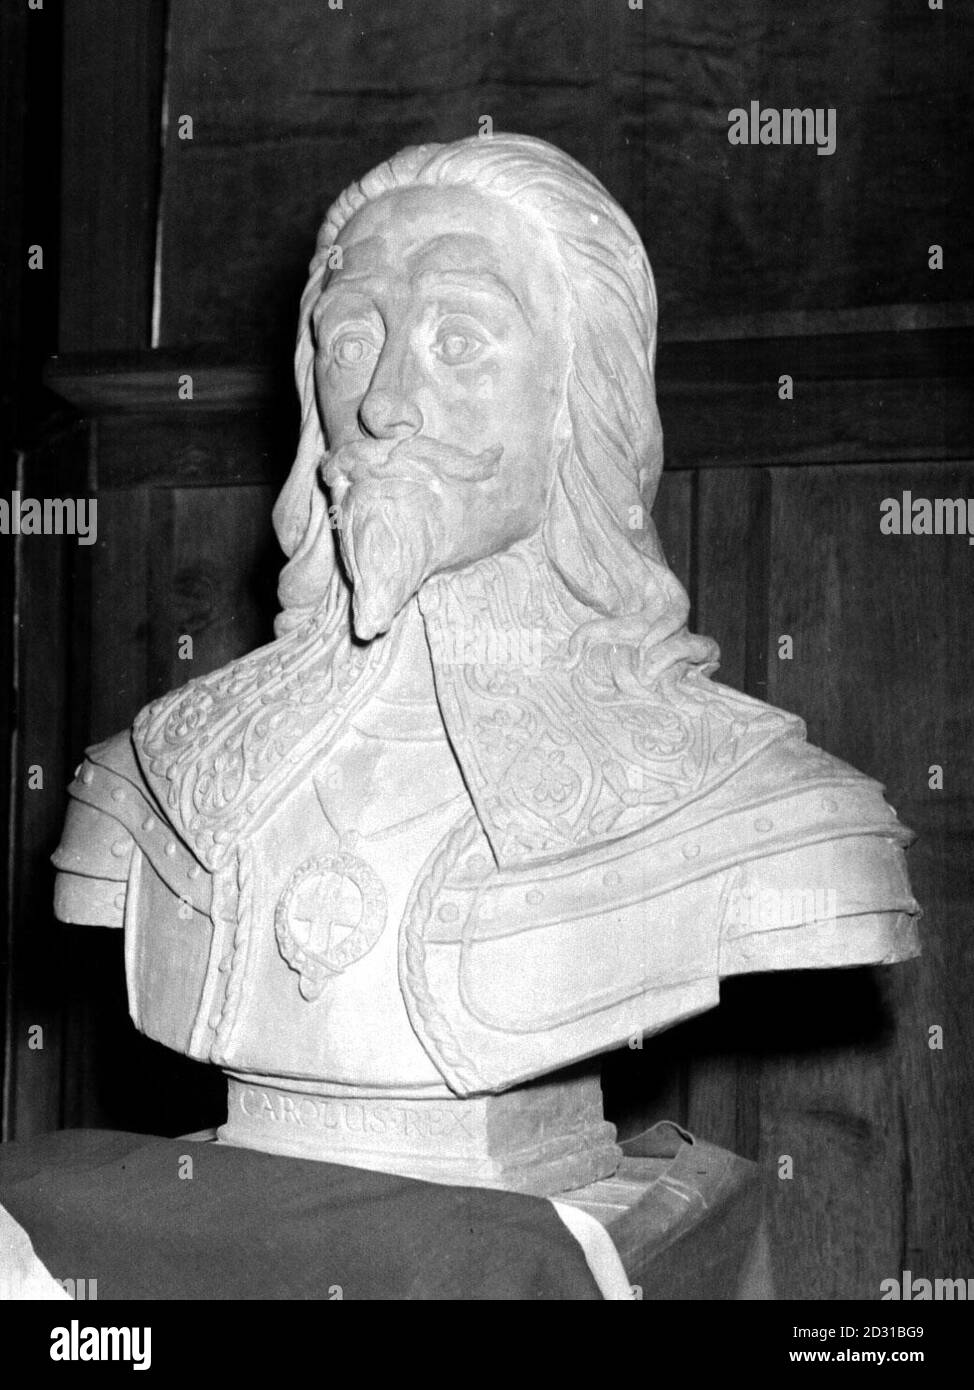 ROI CHARLES I : UN buste du roi Charles I (roi de 1625-1649) à Swindon, Wiltshire. Il a gouverné pendant 11 ans sans Parlement jusqu'à ce que la rébellion éclate en Écosse. Le conflit avec le Parlement a conduit à la guerre civile anglaise, qui s'est terminée en 1649 avec le procès et l'exécution de Charles. Banque D'Images